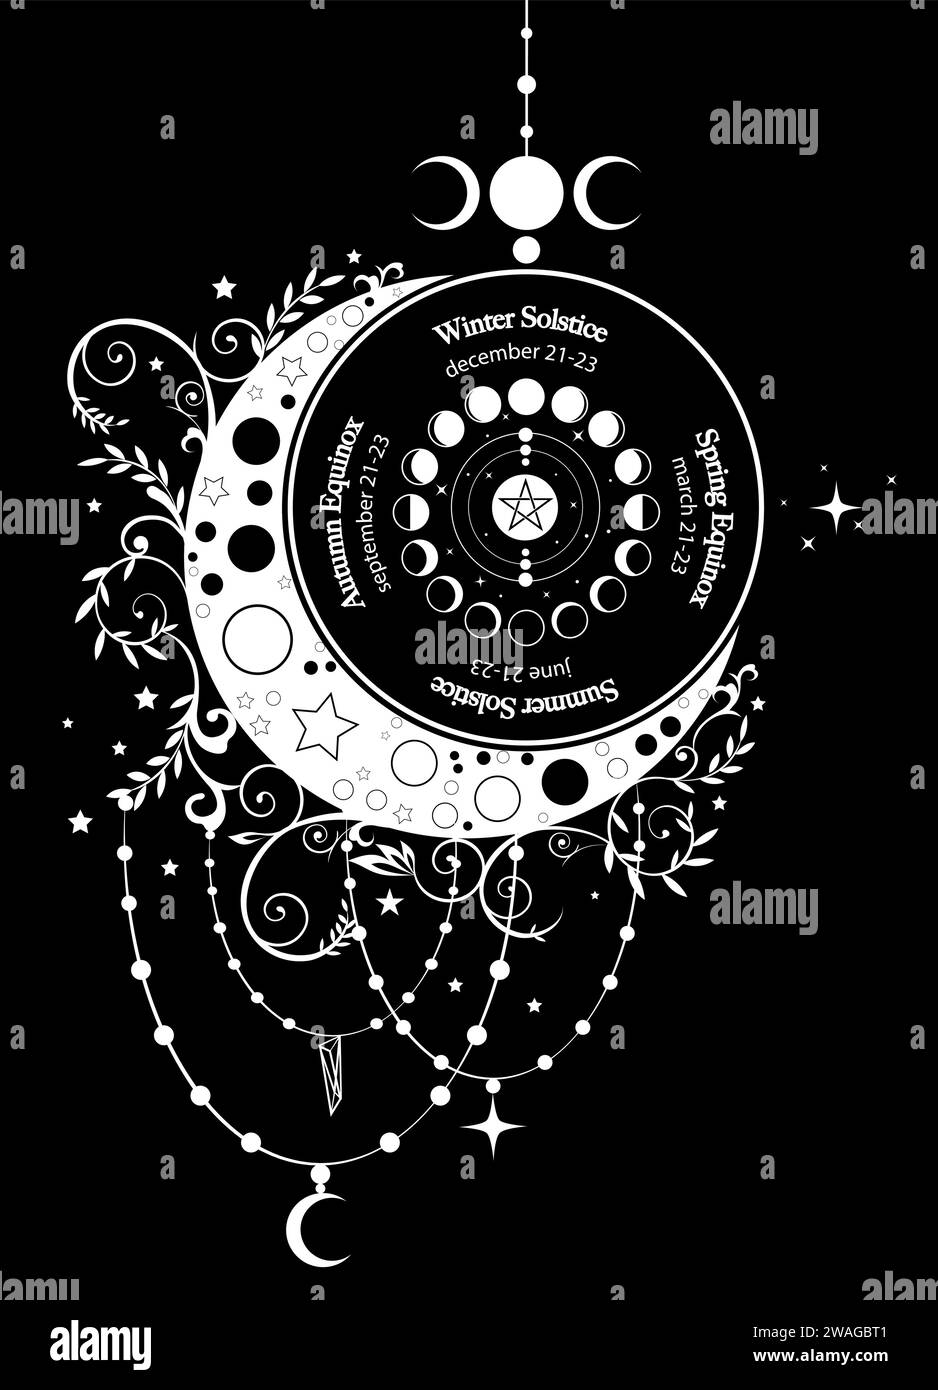 circolo solstizio ed equinozio, fase della ruota lunare con date e nomi. Luna a mezzaluna con motivi floreali bianchi in stile boho. Il fortunato pagano oracle Wiccan firma Illustrazione Vettoriale